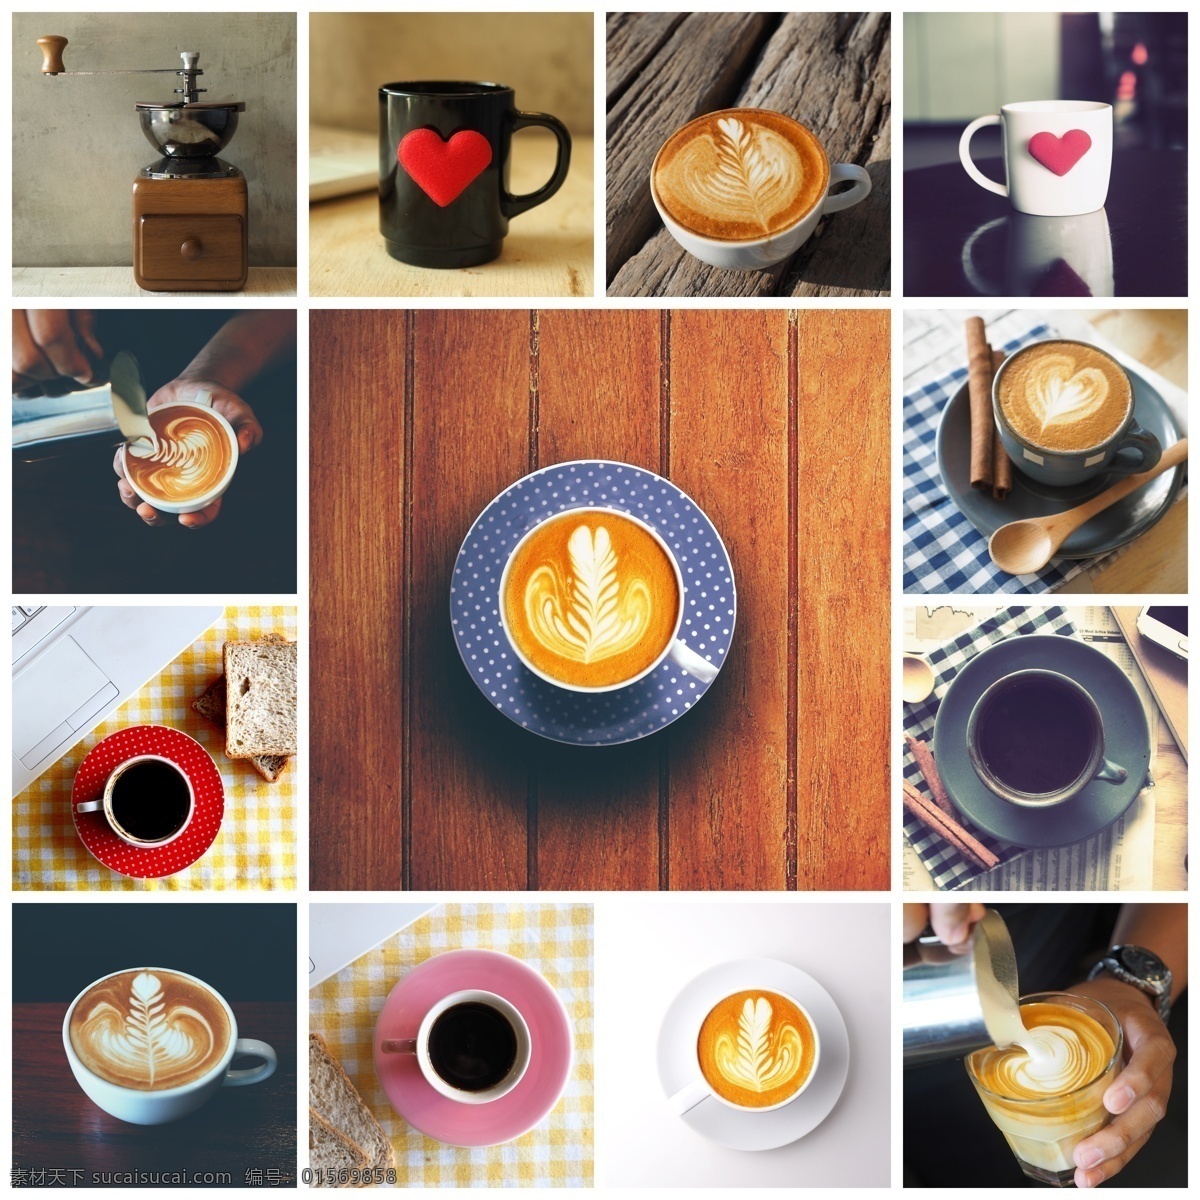 咖啡 研磨机 杯子 咖啡研磨机 咖啡拉花 咖啡杯子 咖啡摄影 咖啡主题 酒水饮料 餐饮美食 白色